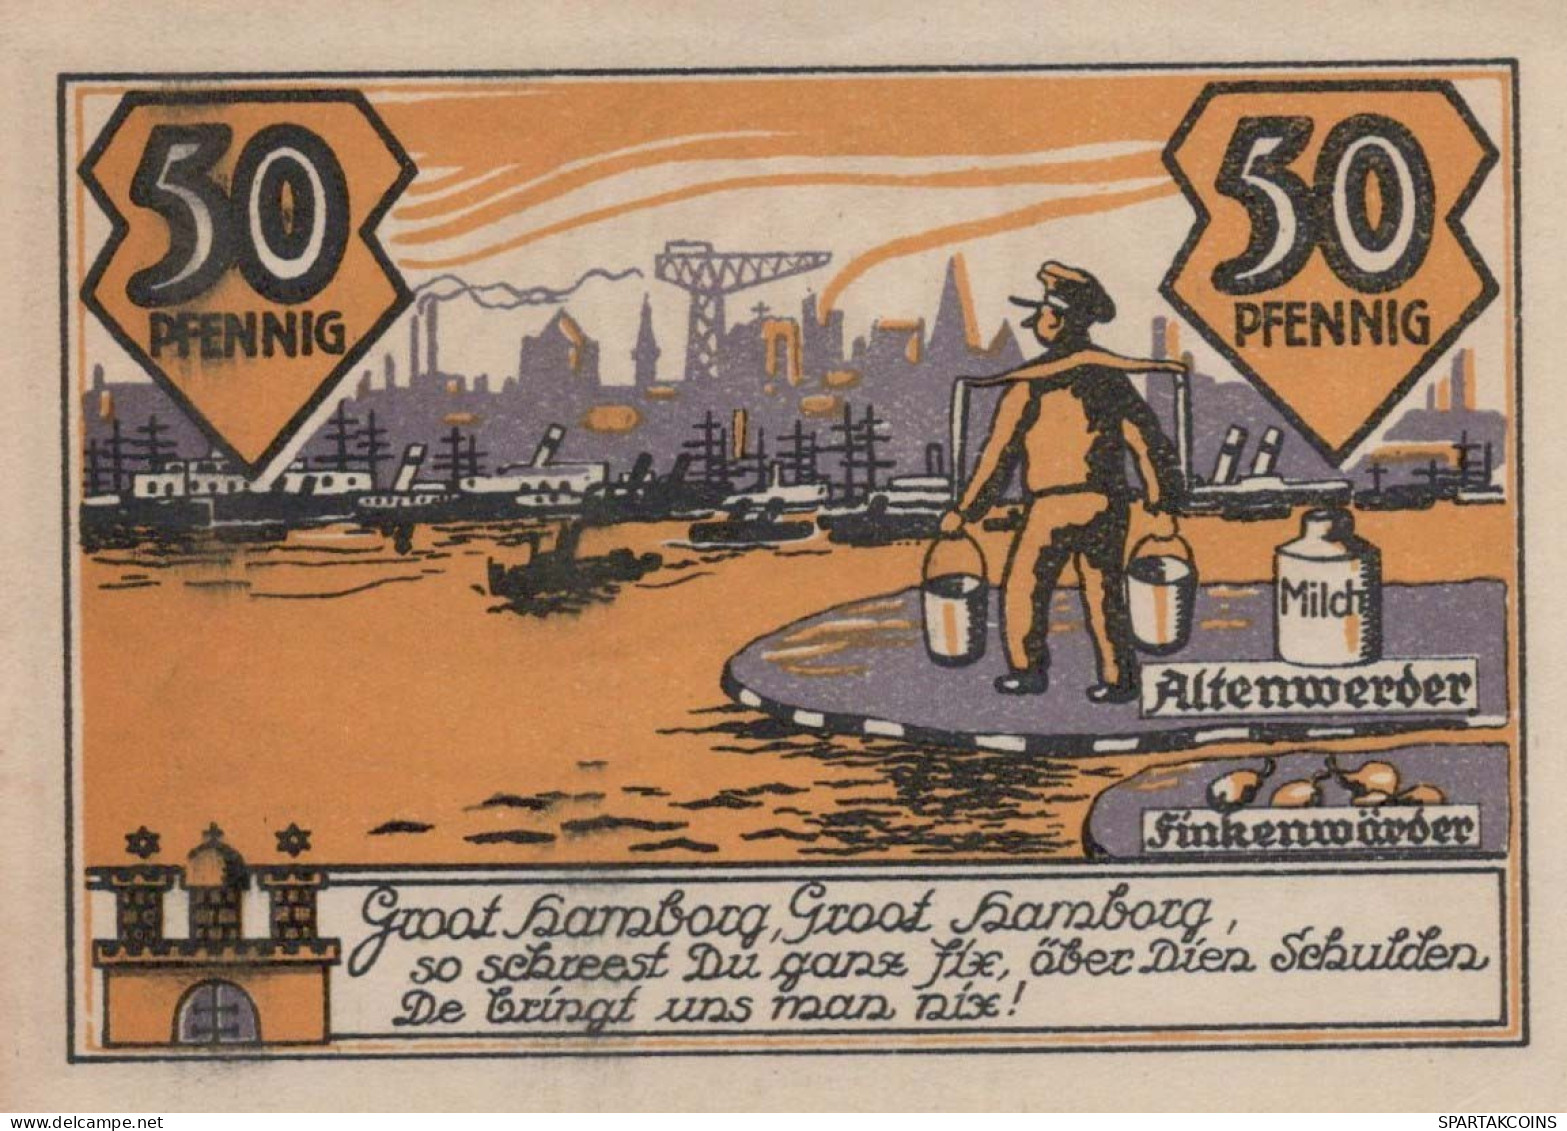 50 PFENNIG 1922 ALTENWERDER AND FINKENWERDER Hanover UNC DEUTSCHLAND #PA043 - [11] Lokale Uitgaven